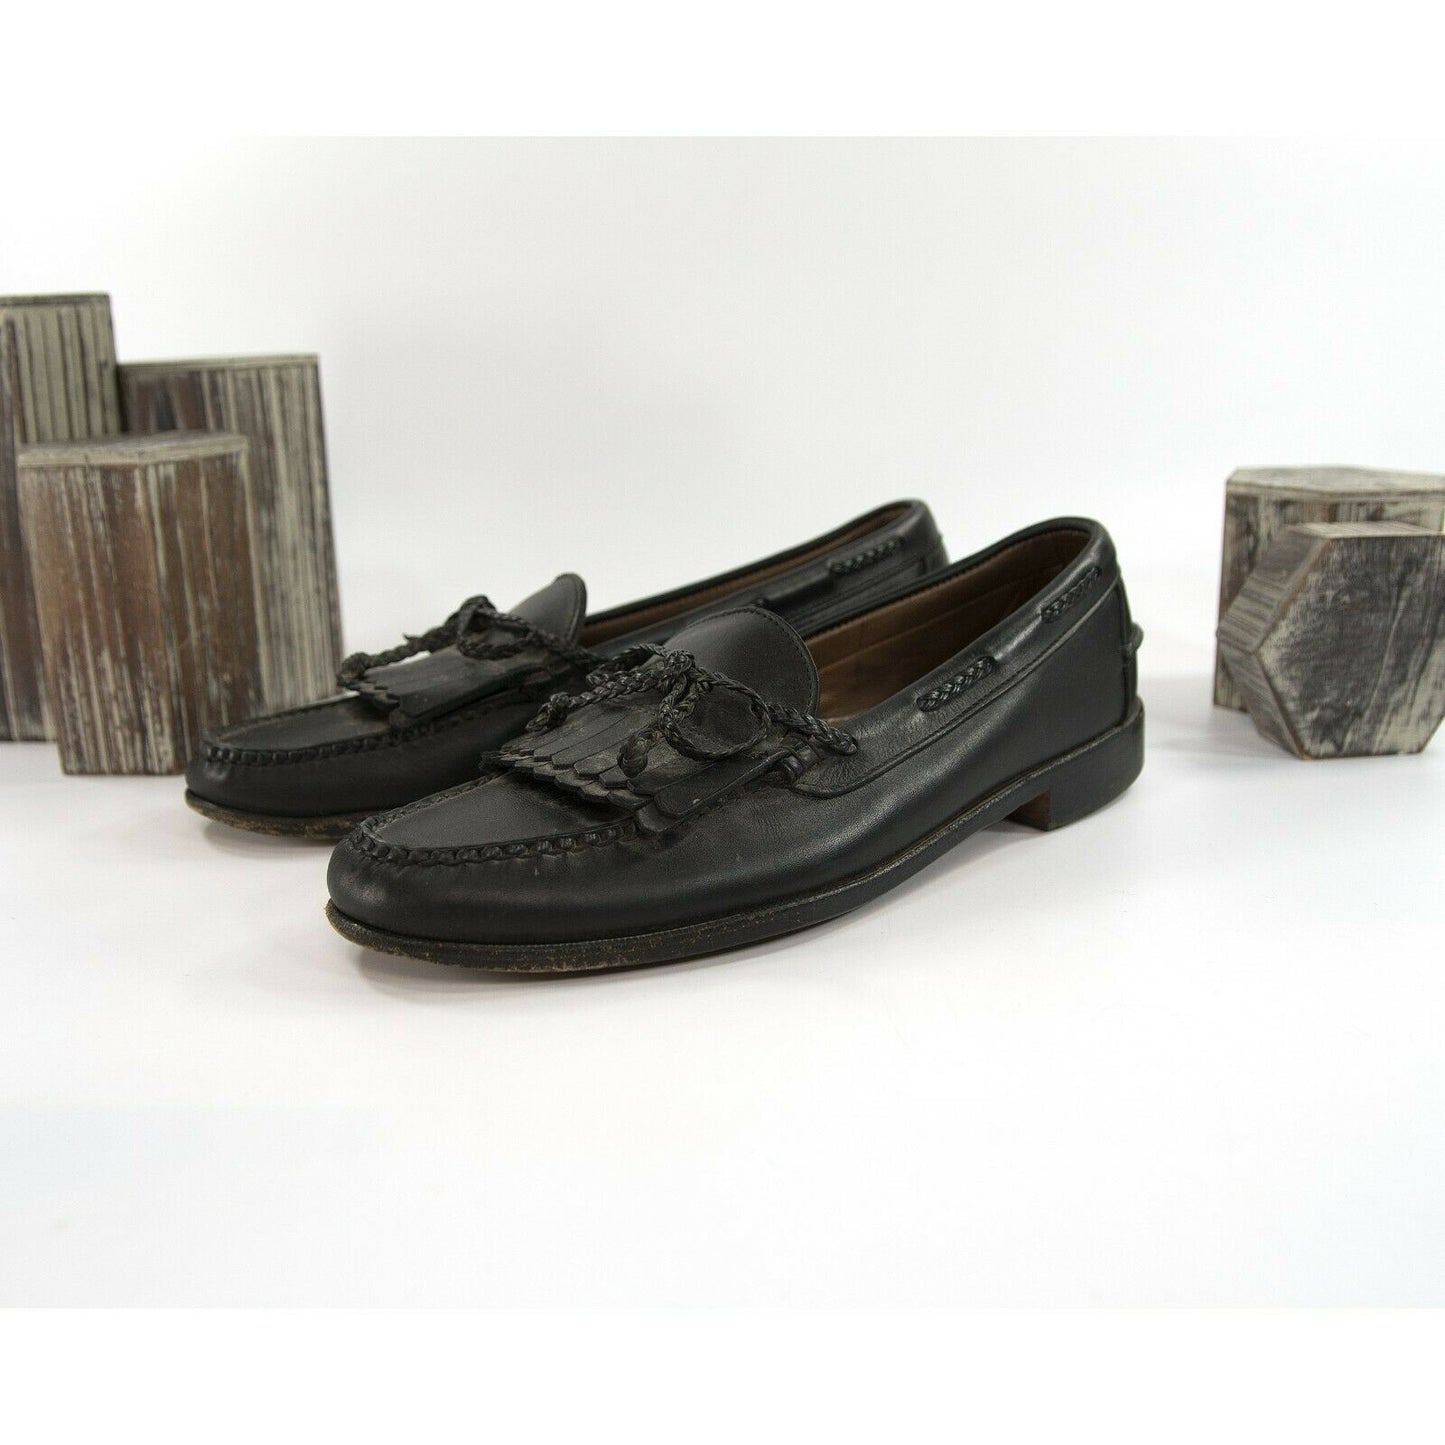 Allen Edmonds Black Leather Tassel Moccasin Loafer 12 GUC